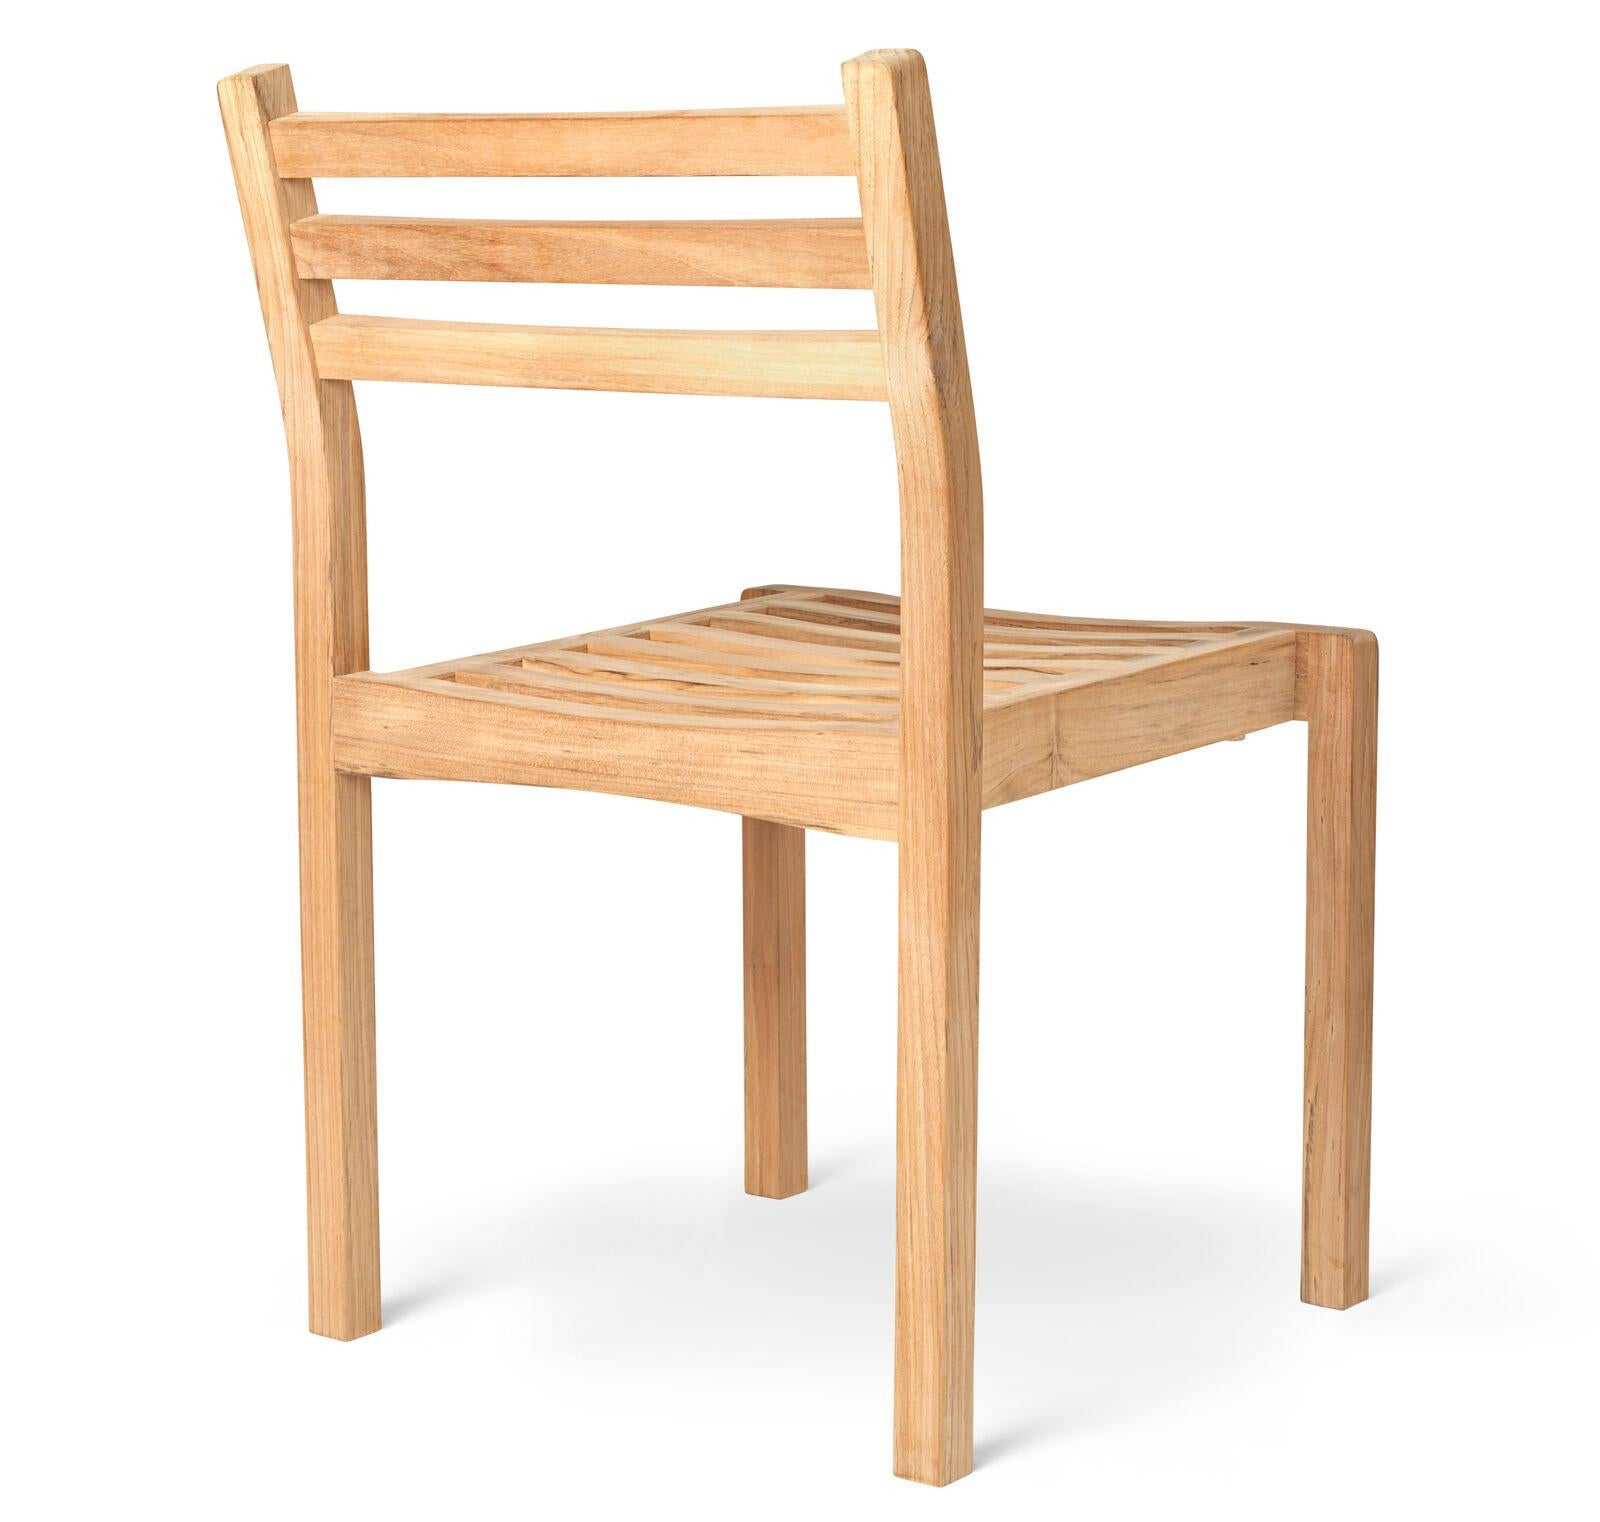 Der AH501 Outdoor Dining Chair wurde von Alfred Homann im Jahr 2022 als Teil der AH Outdoor Serie entworfen. Er zeichnet sich durch strenge Linien aus, die elegant mit weichen, abgerundeten Details kombiniert werden. Der Stuhl kann mit dem